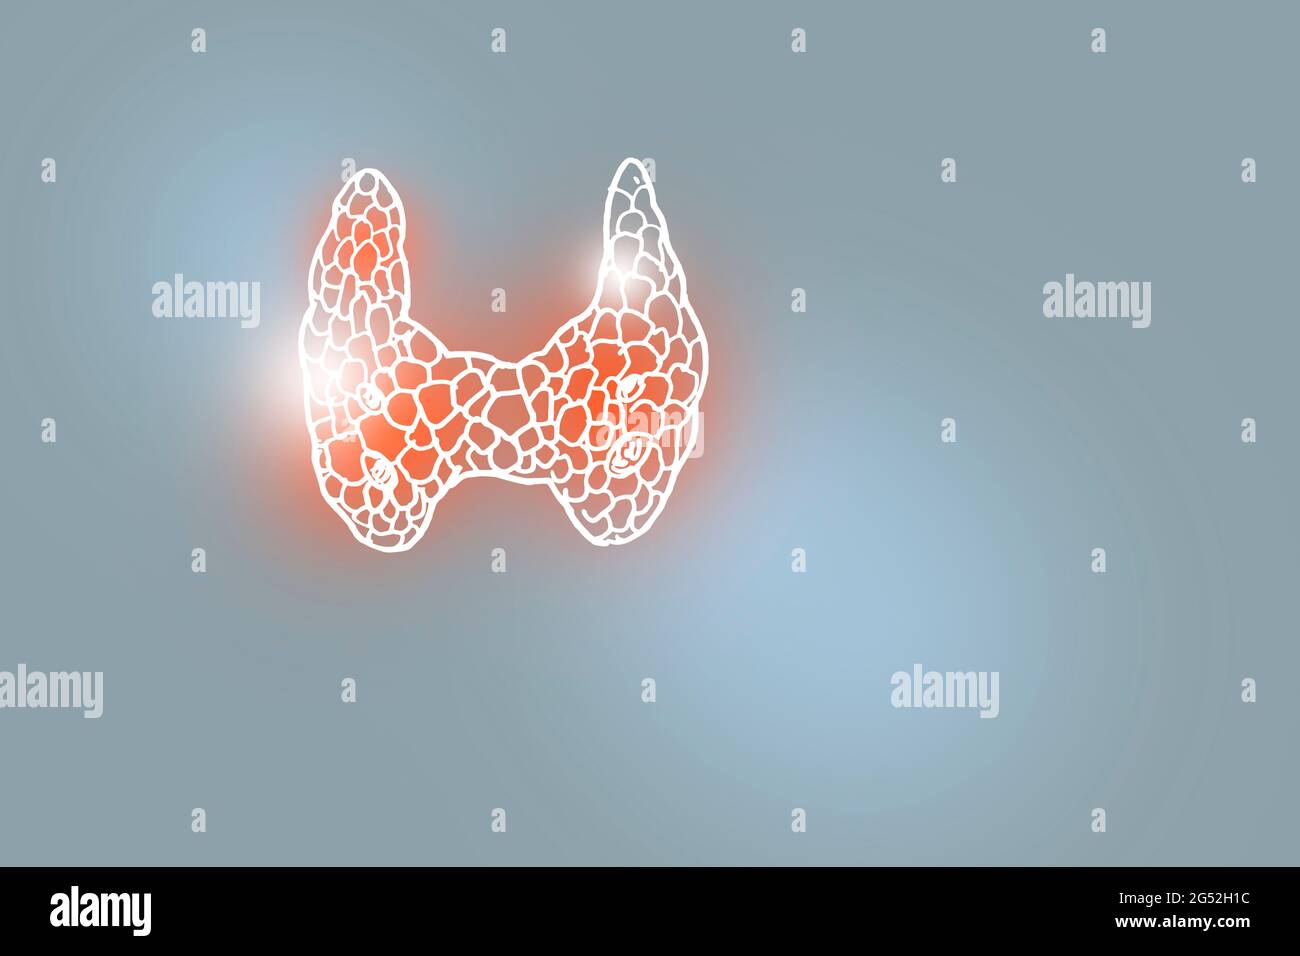 Illustrazione Handrawn della ghiandola tiroidea umana su sfondo grigio chiaro. Set medico-scientifico con i principali organi umani con spazio di copia vuoto per il testo Foto Stock